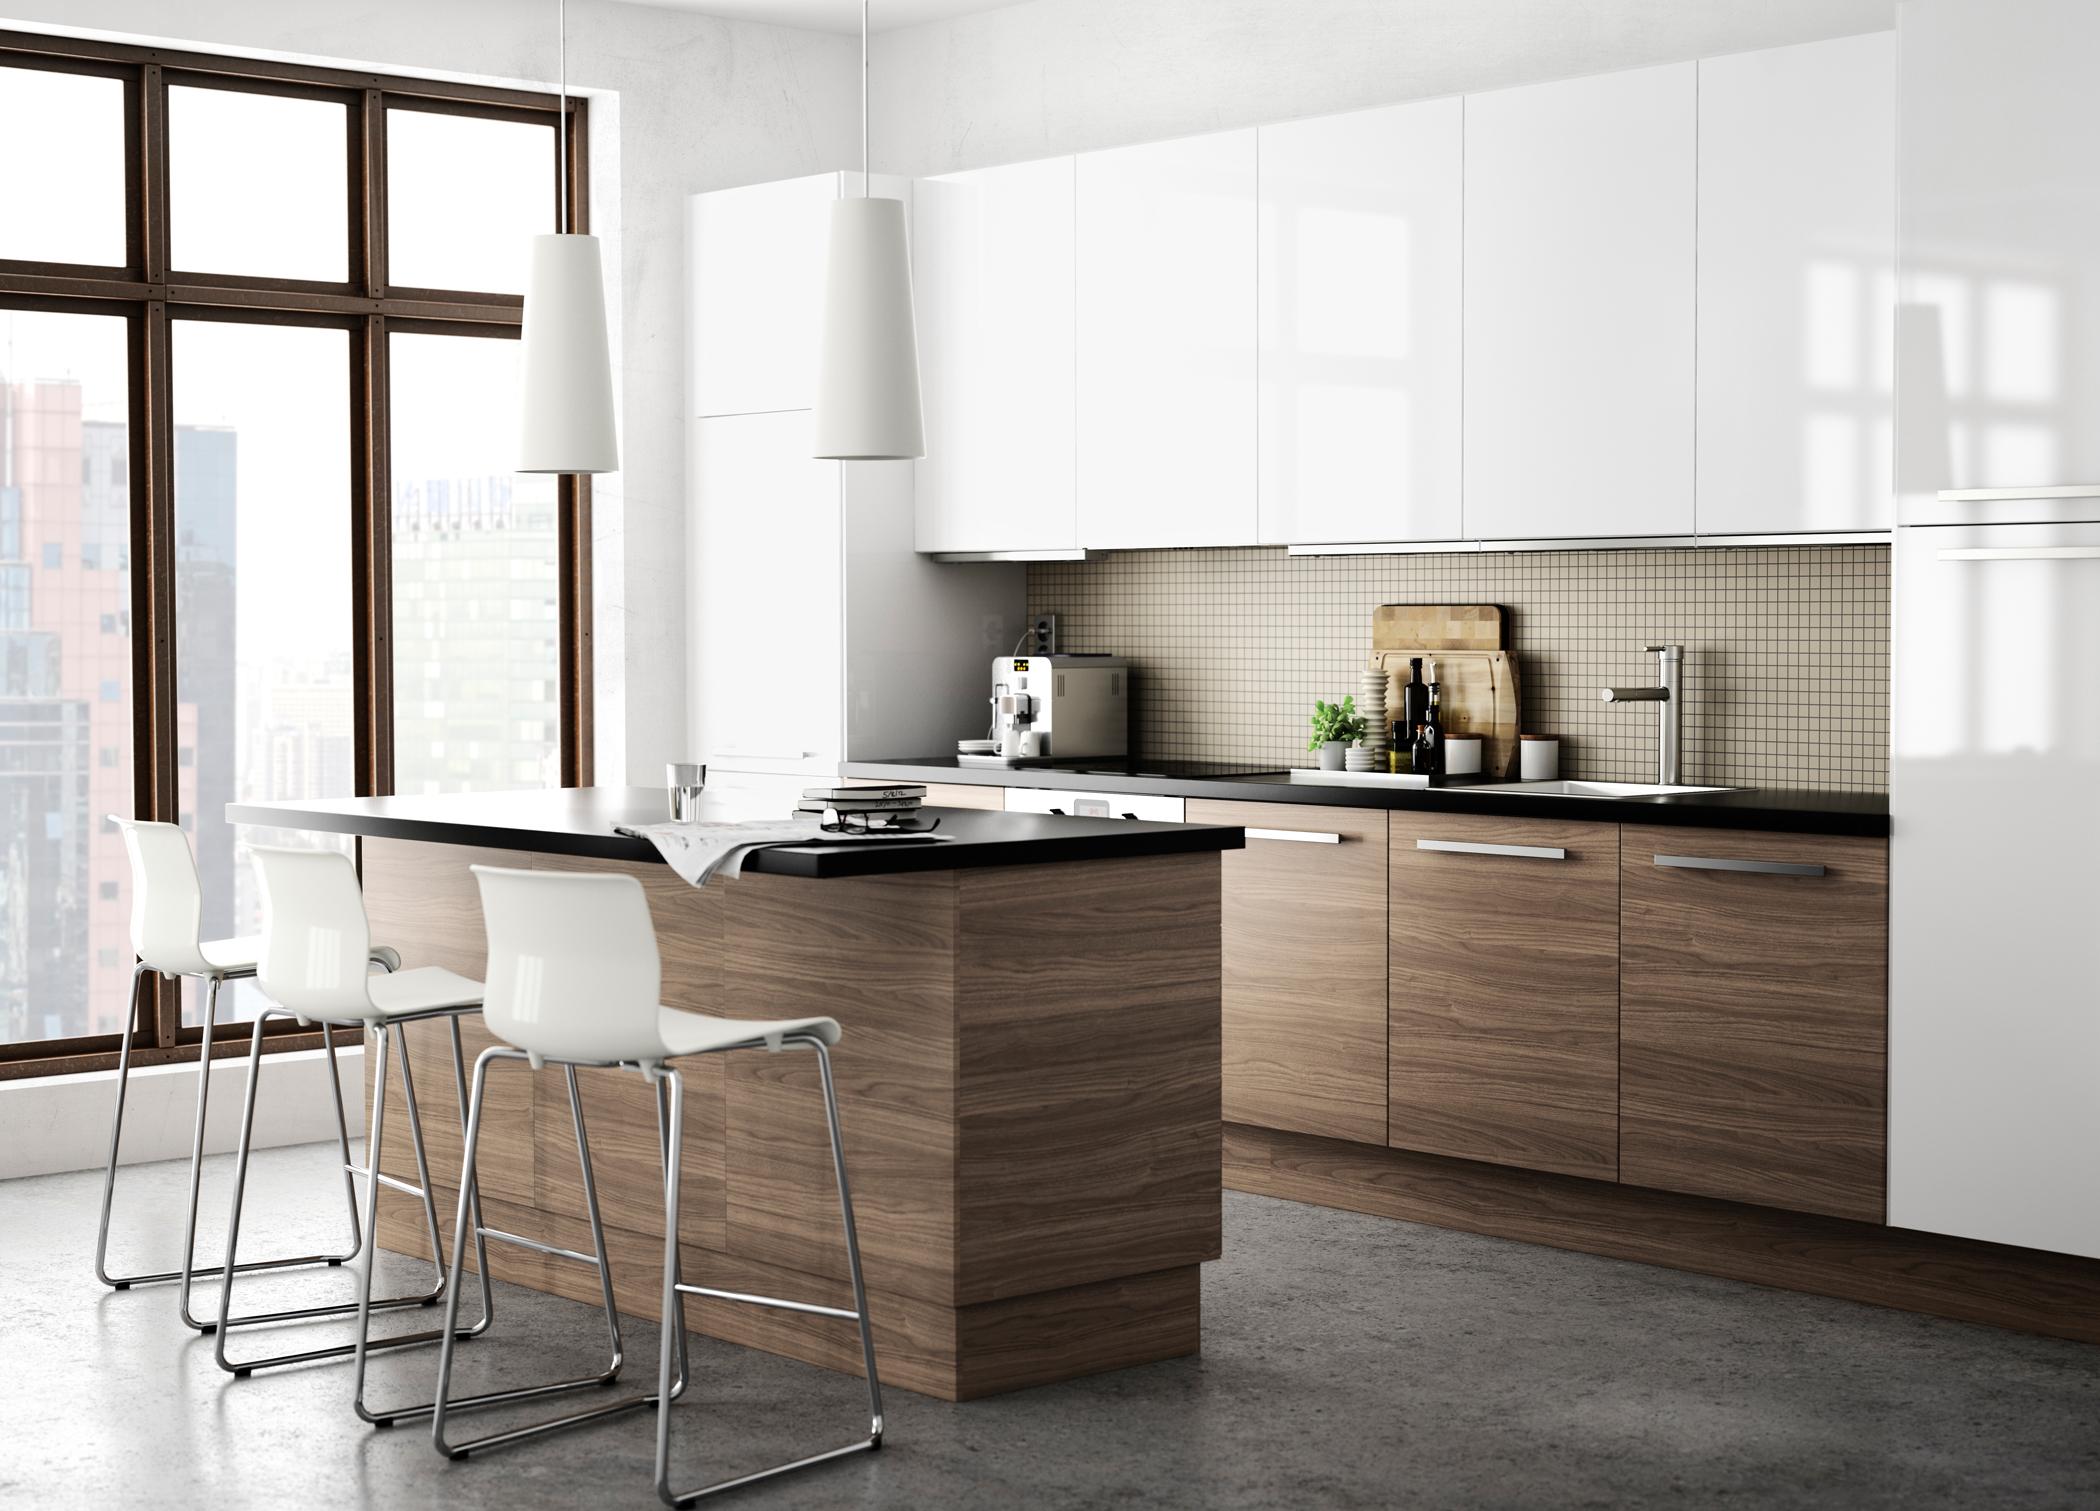 Holzfarbene Einbauküche mit weißen Schränken #ikea #pendelleuchte #weißerbarhocker ©Inter IKEA Systems B.V.